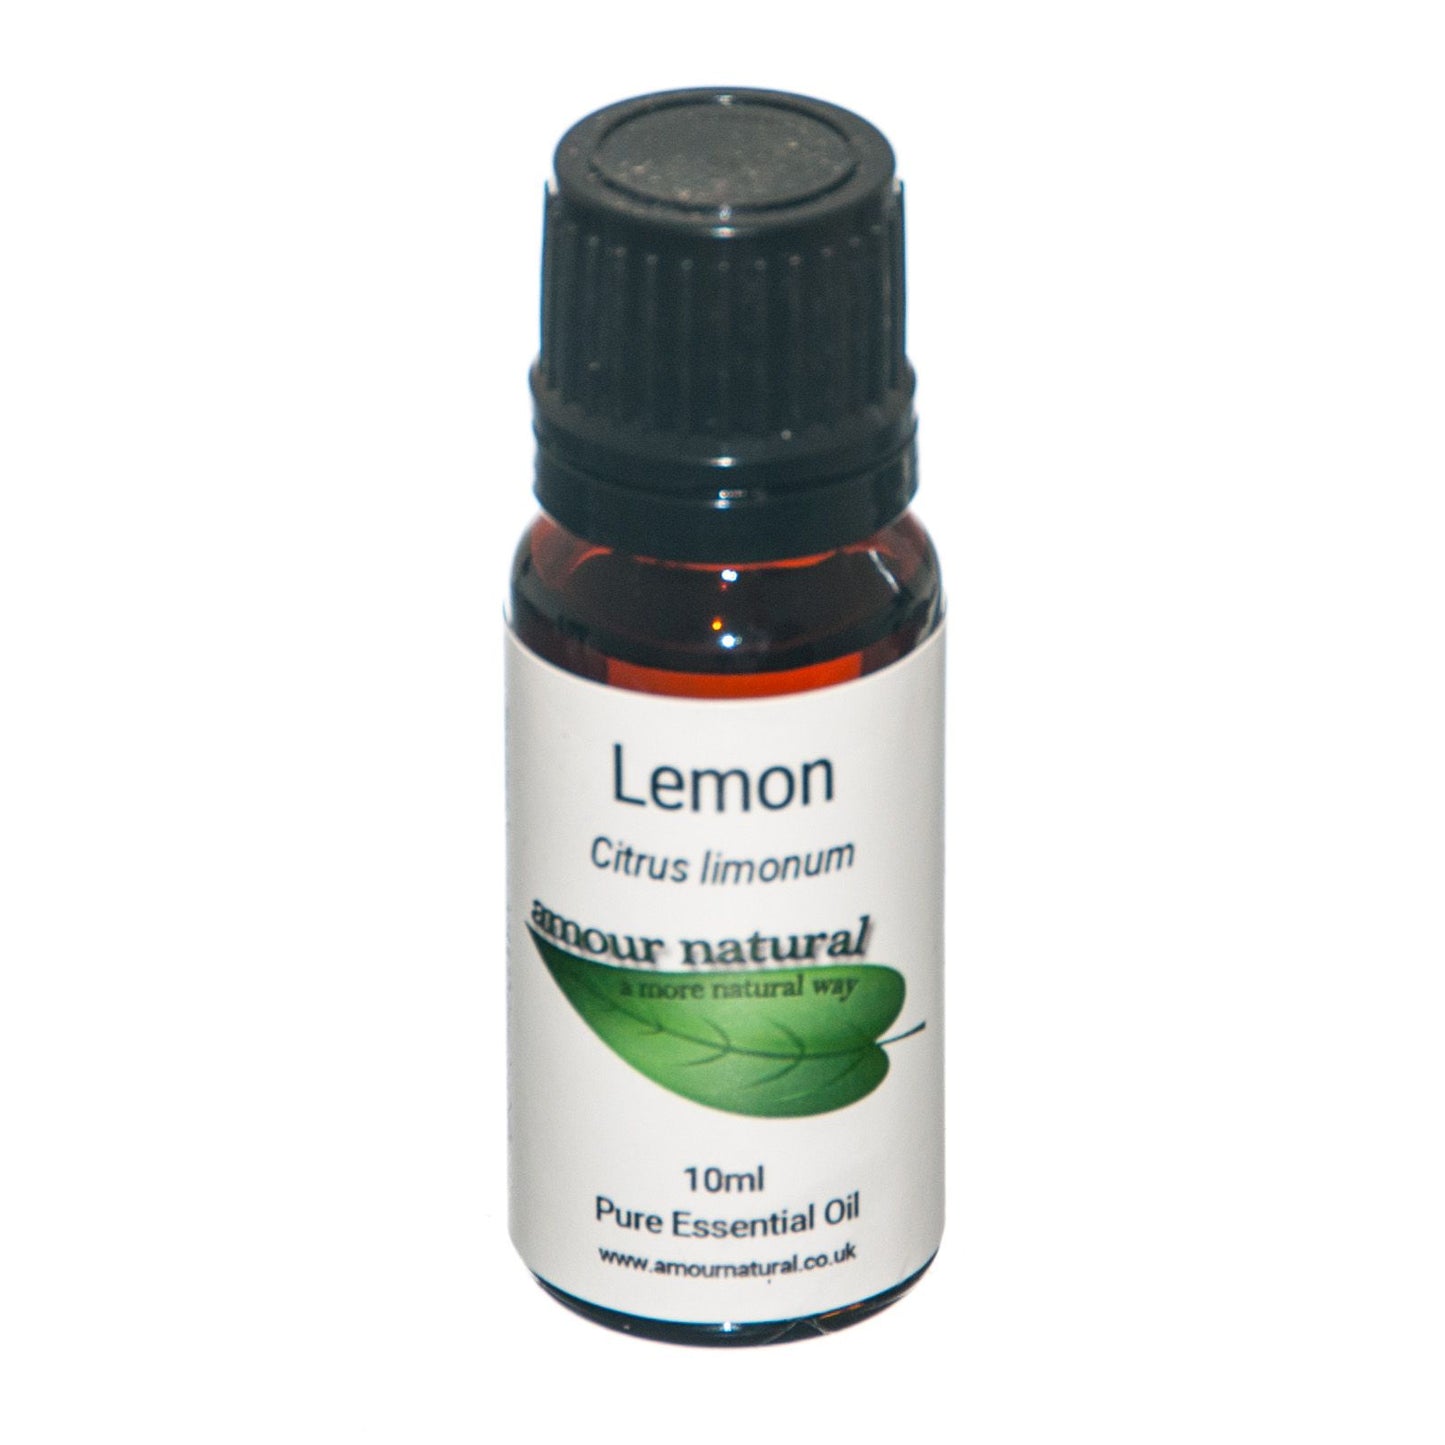 LEMON ESSENTIAL OIL (Citrus limonum)